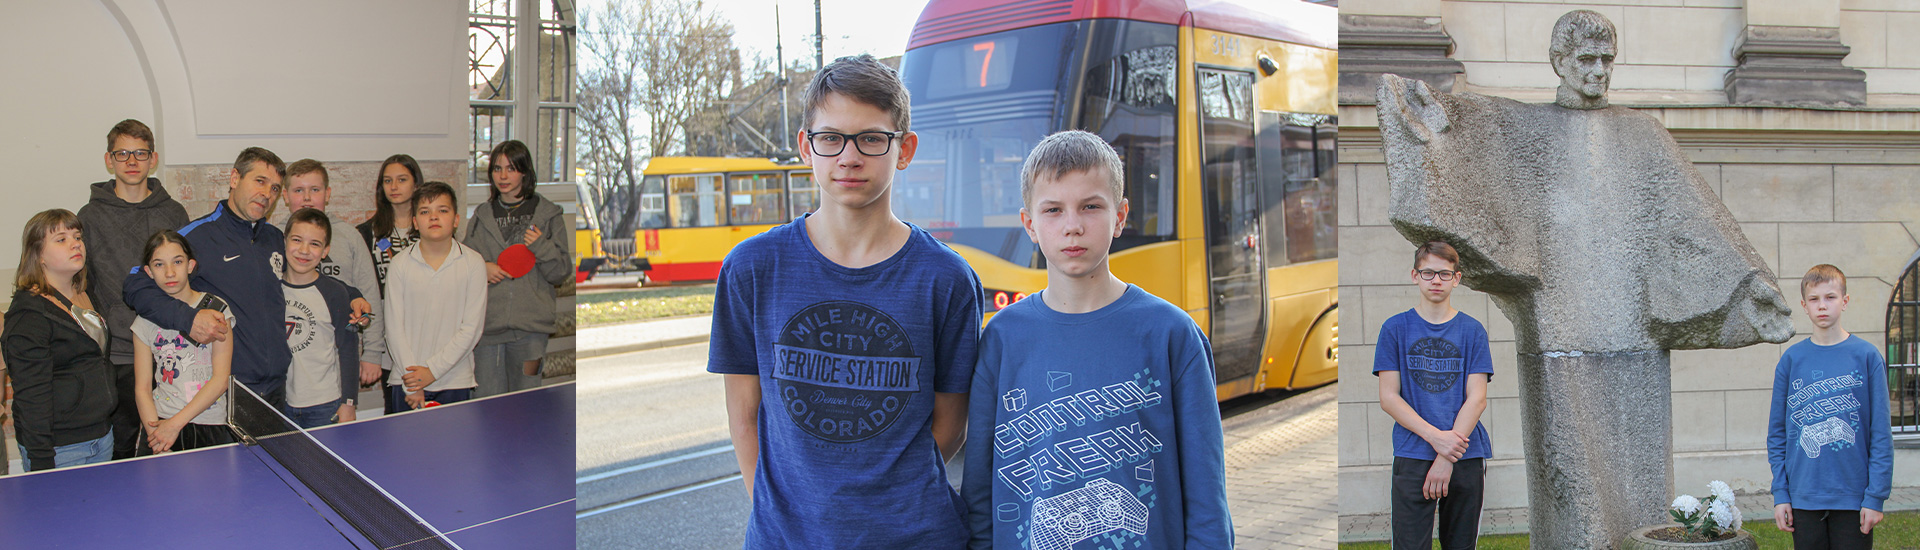 Emergencia Ucrania. Andre y Roma, dos jóvenes amigos convertidos en hermanos por culpa de la guerra